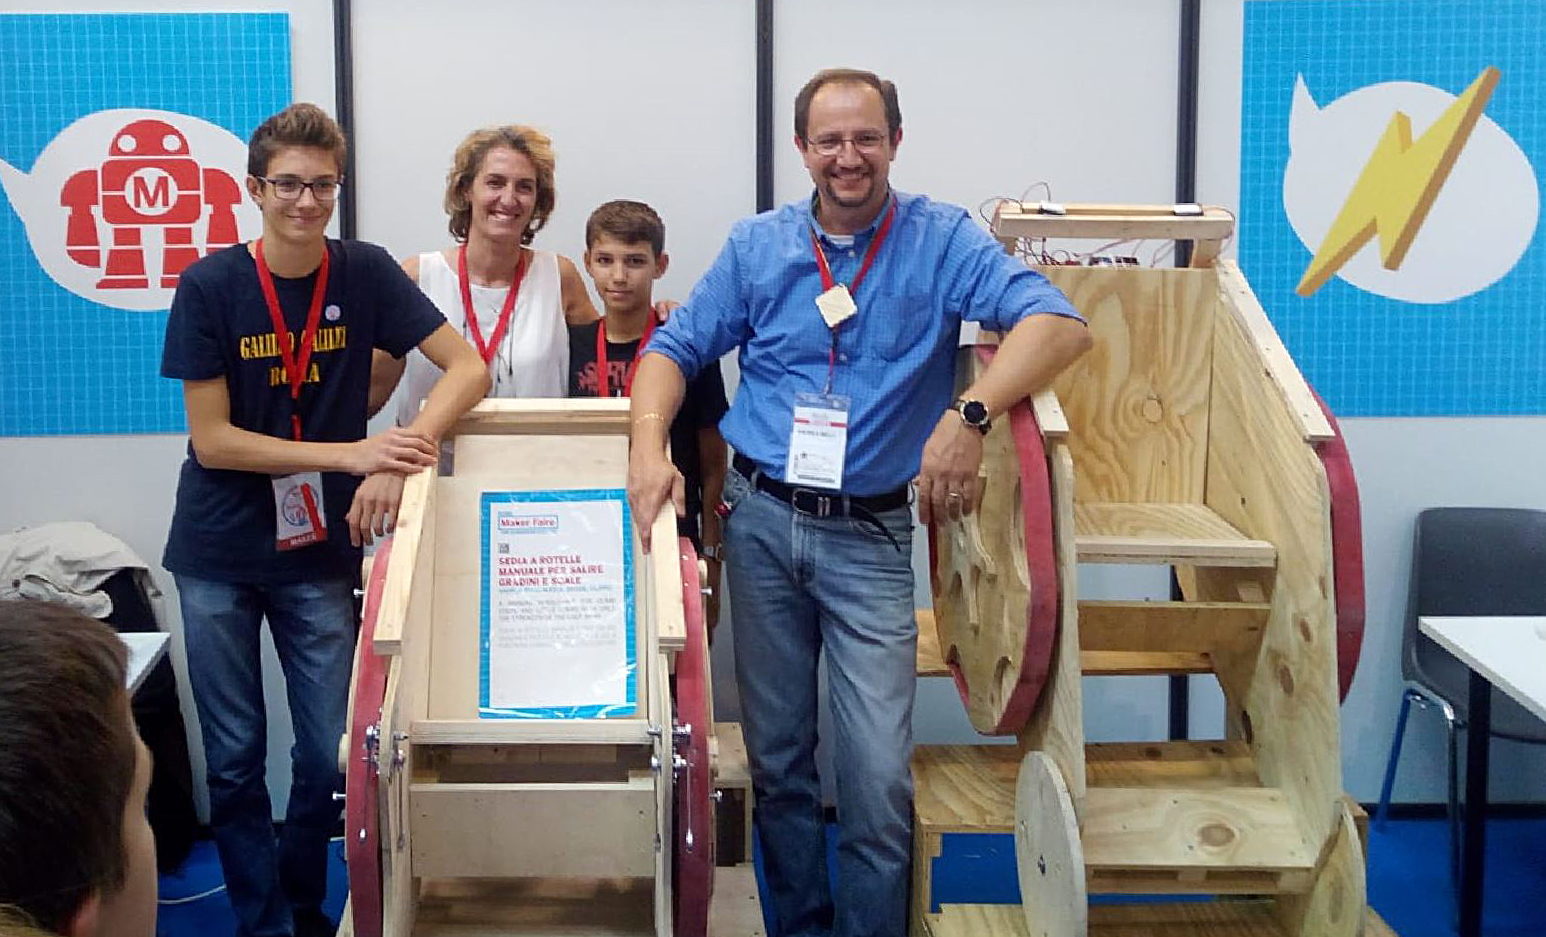 Andrea Belli (al centro) presenta il suo prototipo durante la Maker Faire